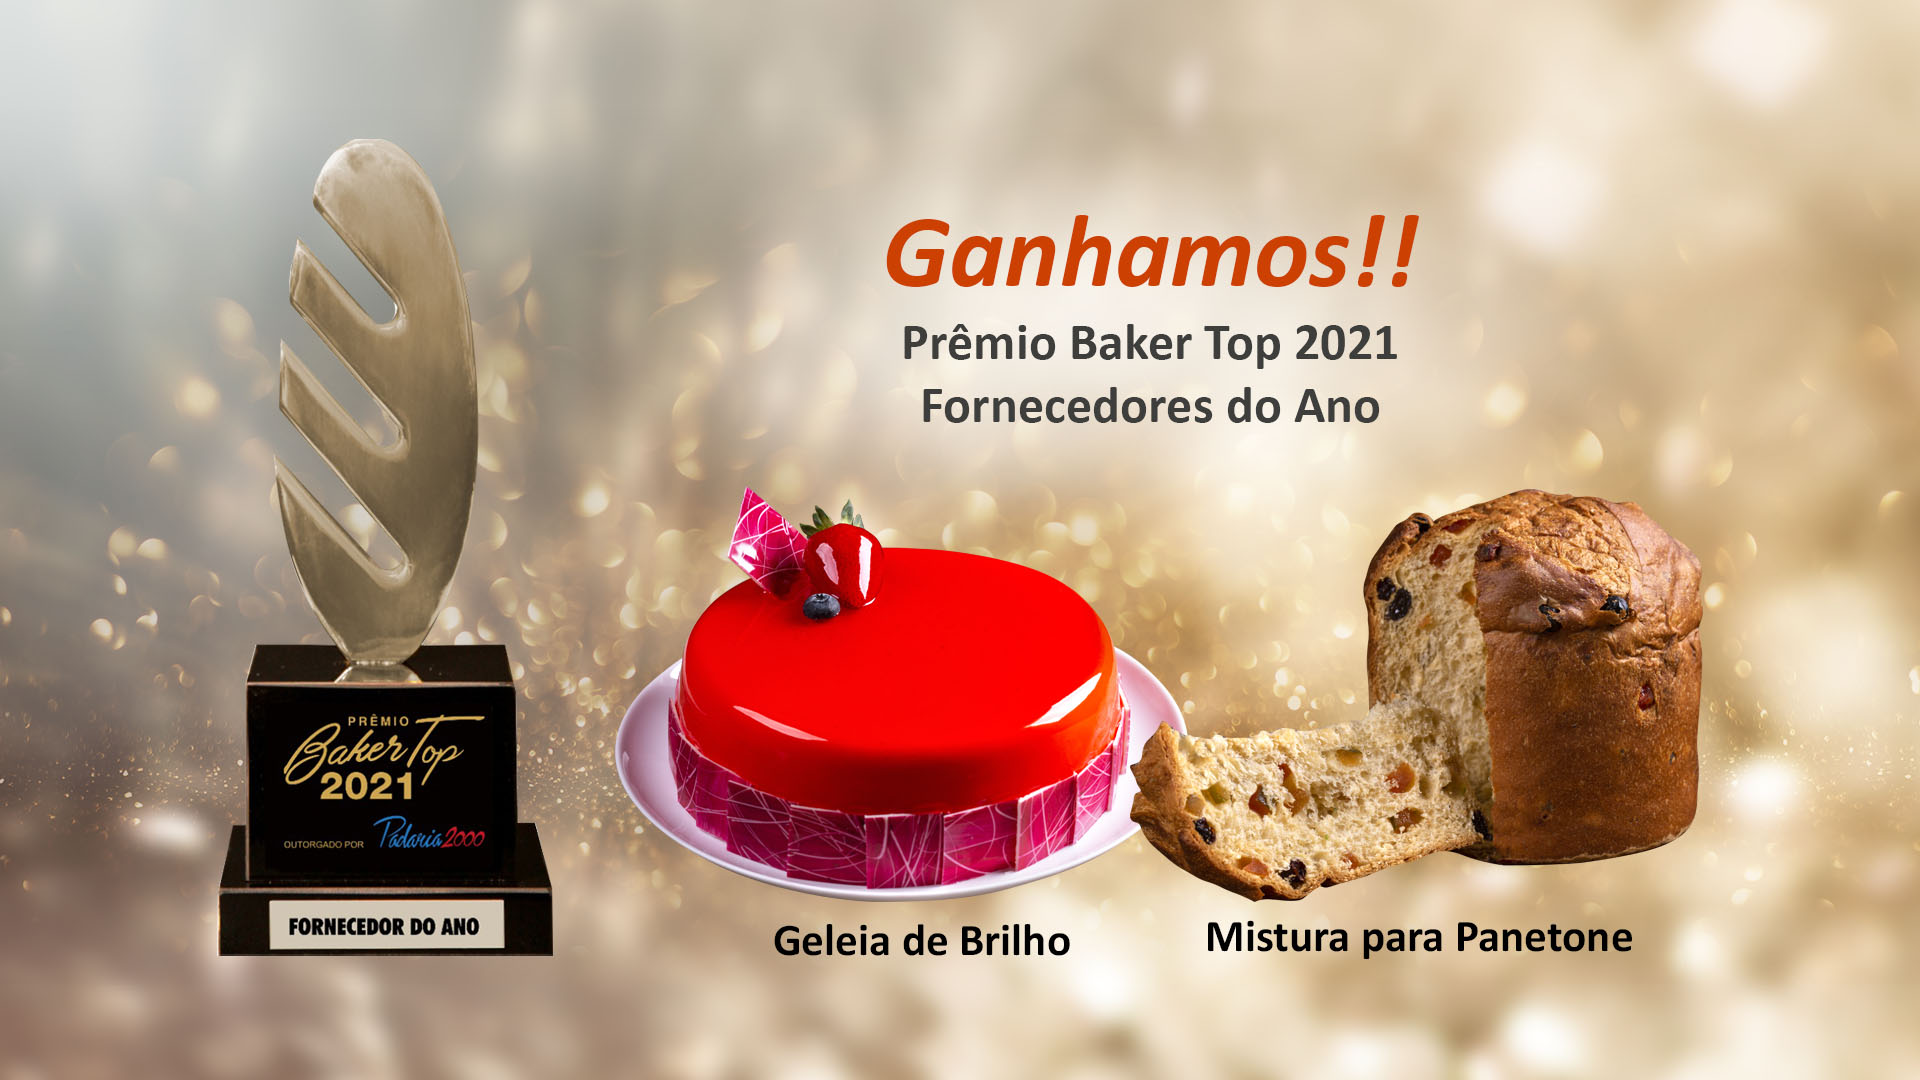 Ganhamos o prêmio Baker Top 2021 nas categorias Geleia de Brilho e Mistura para Panetone